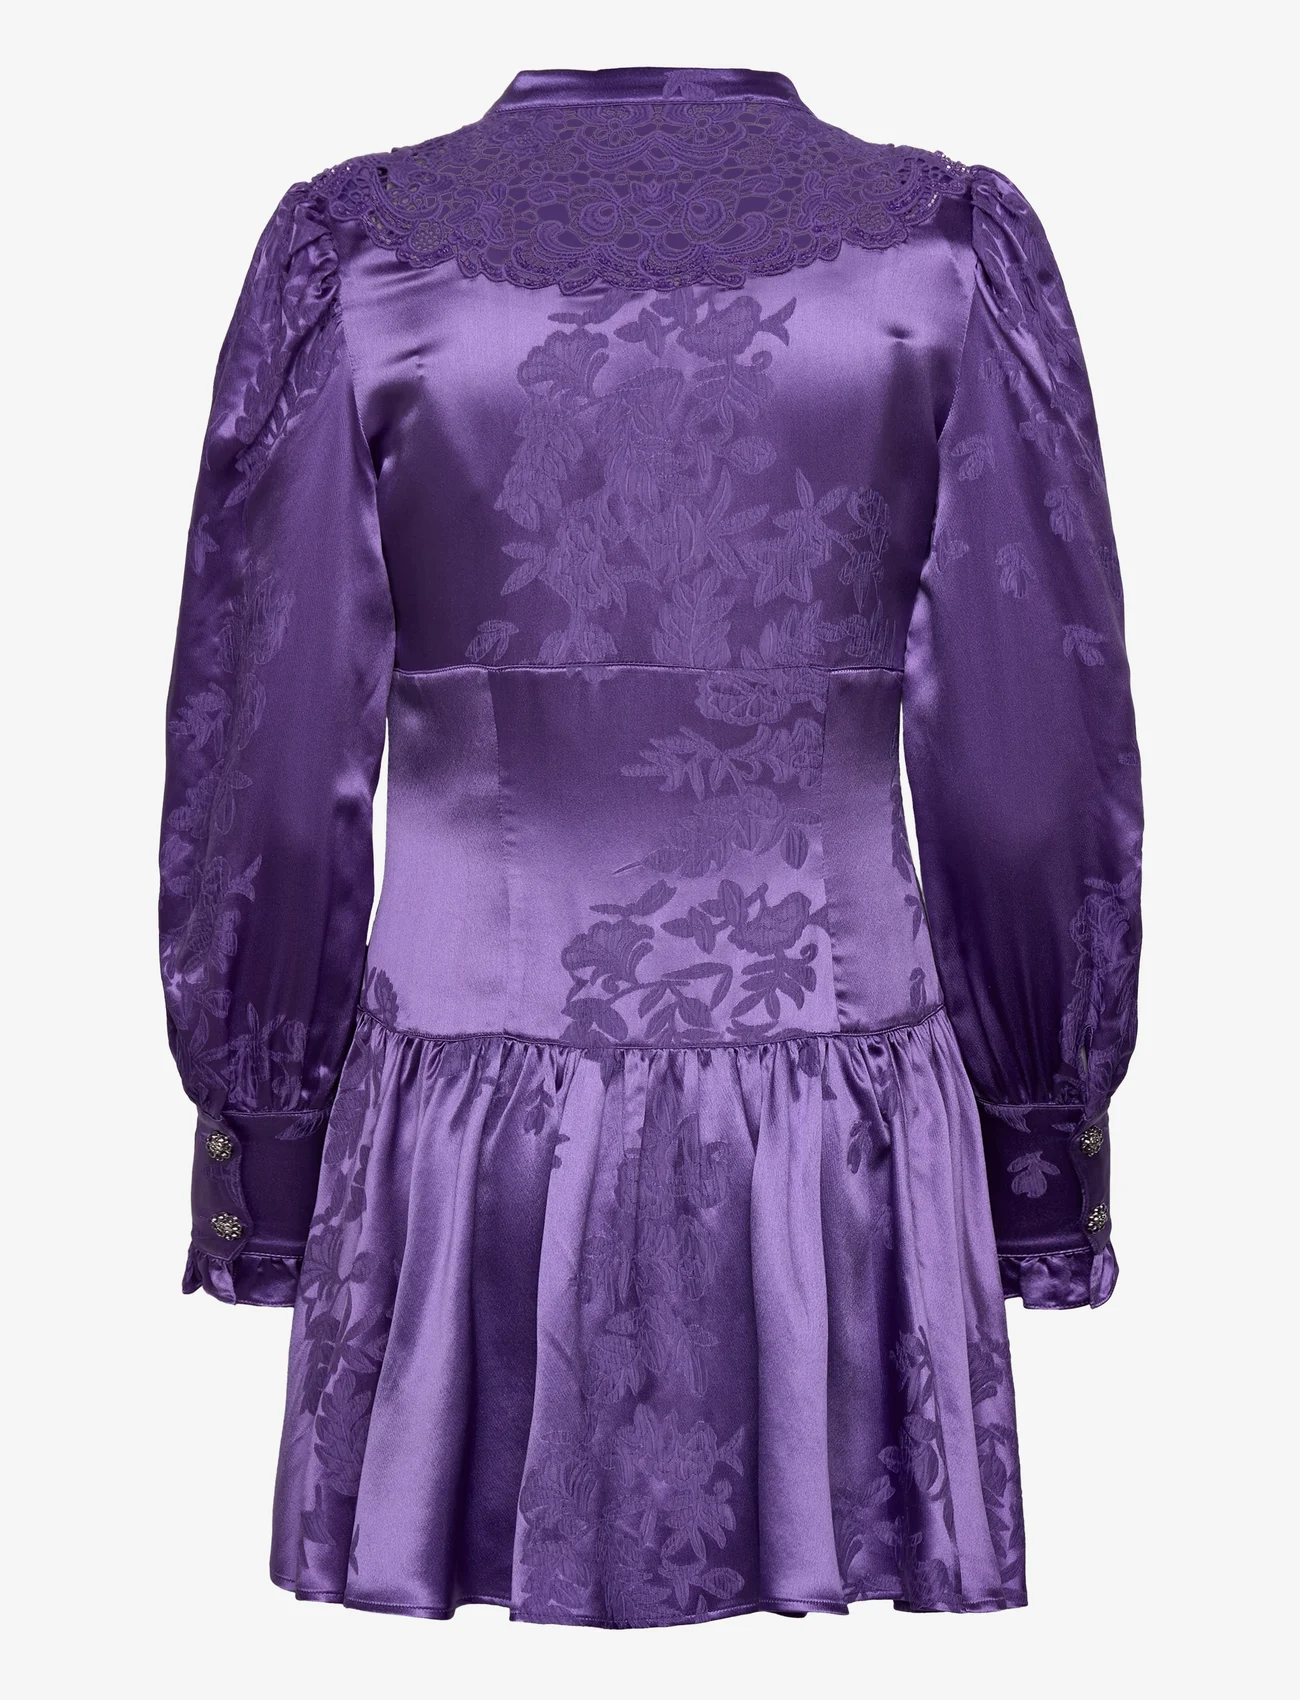 Custommade - Livah BY NBS - feestelijke kleding voor outlet-prijzen - 268 deep lavender - 1